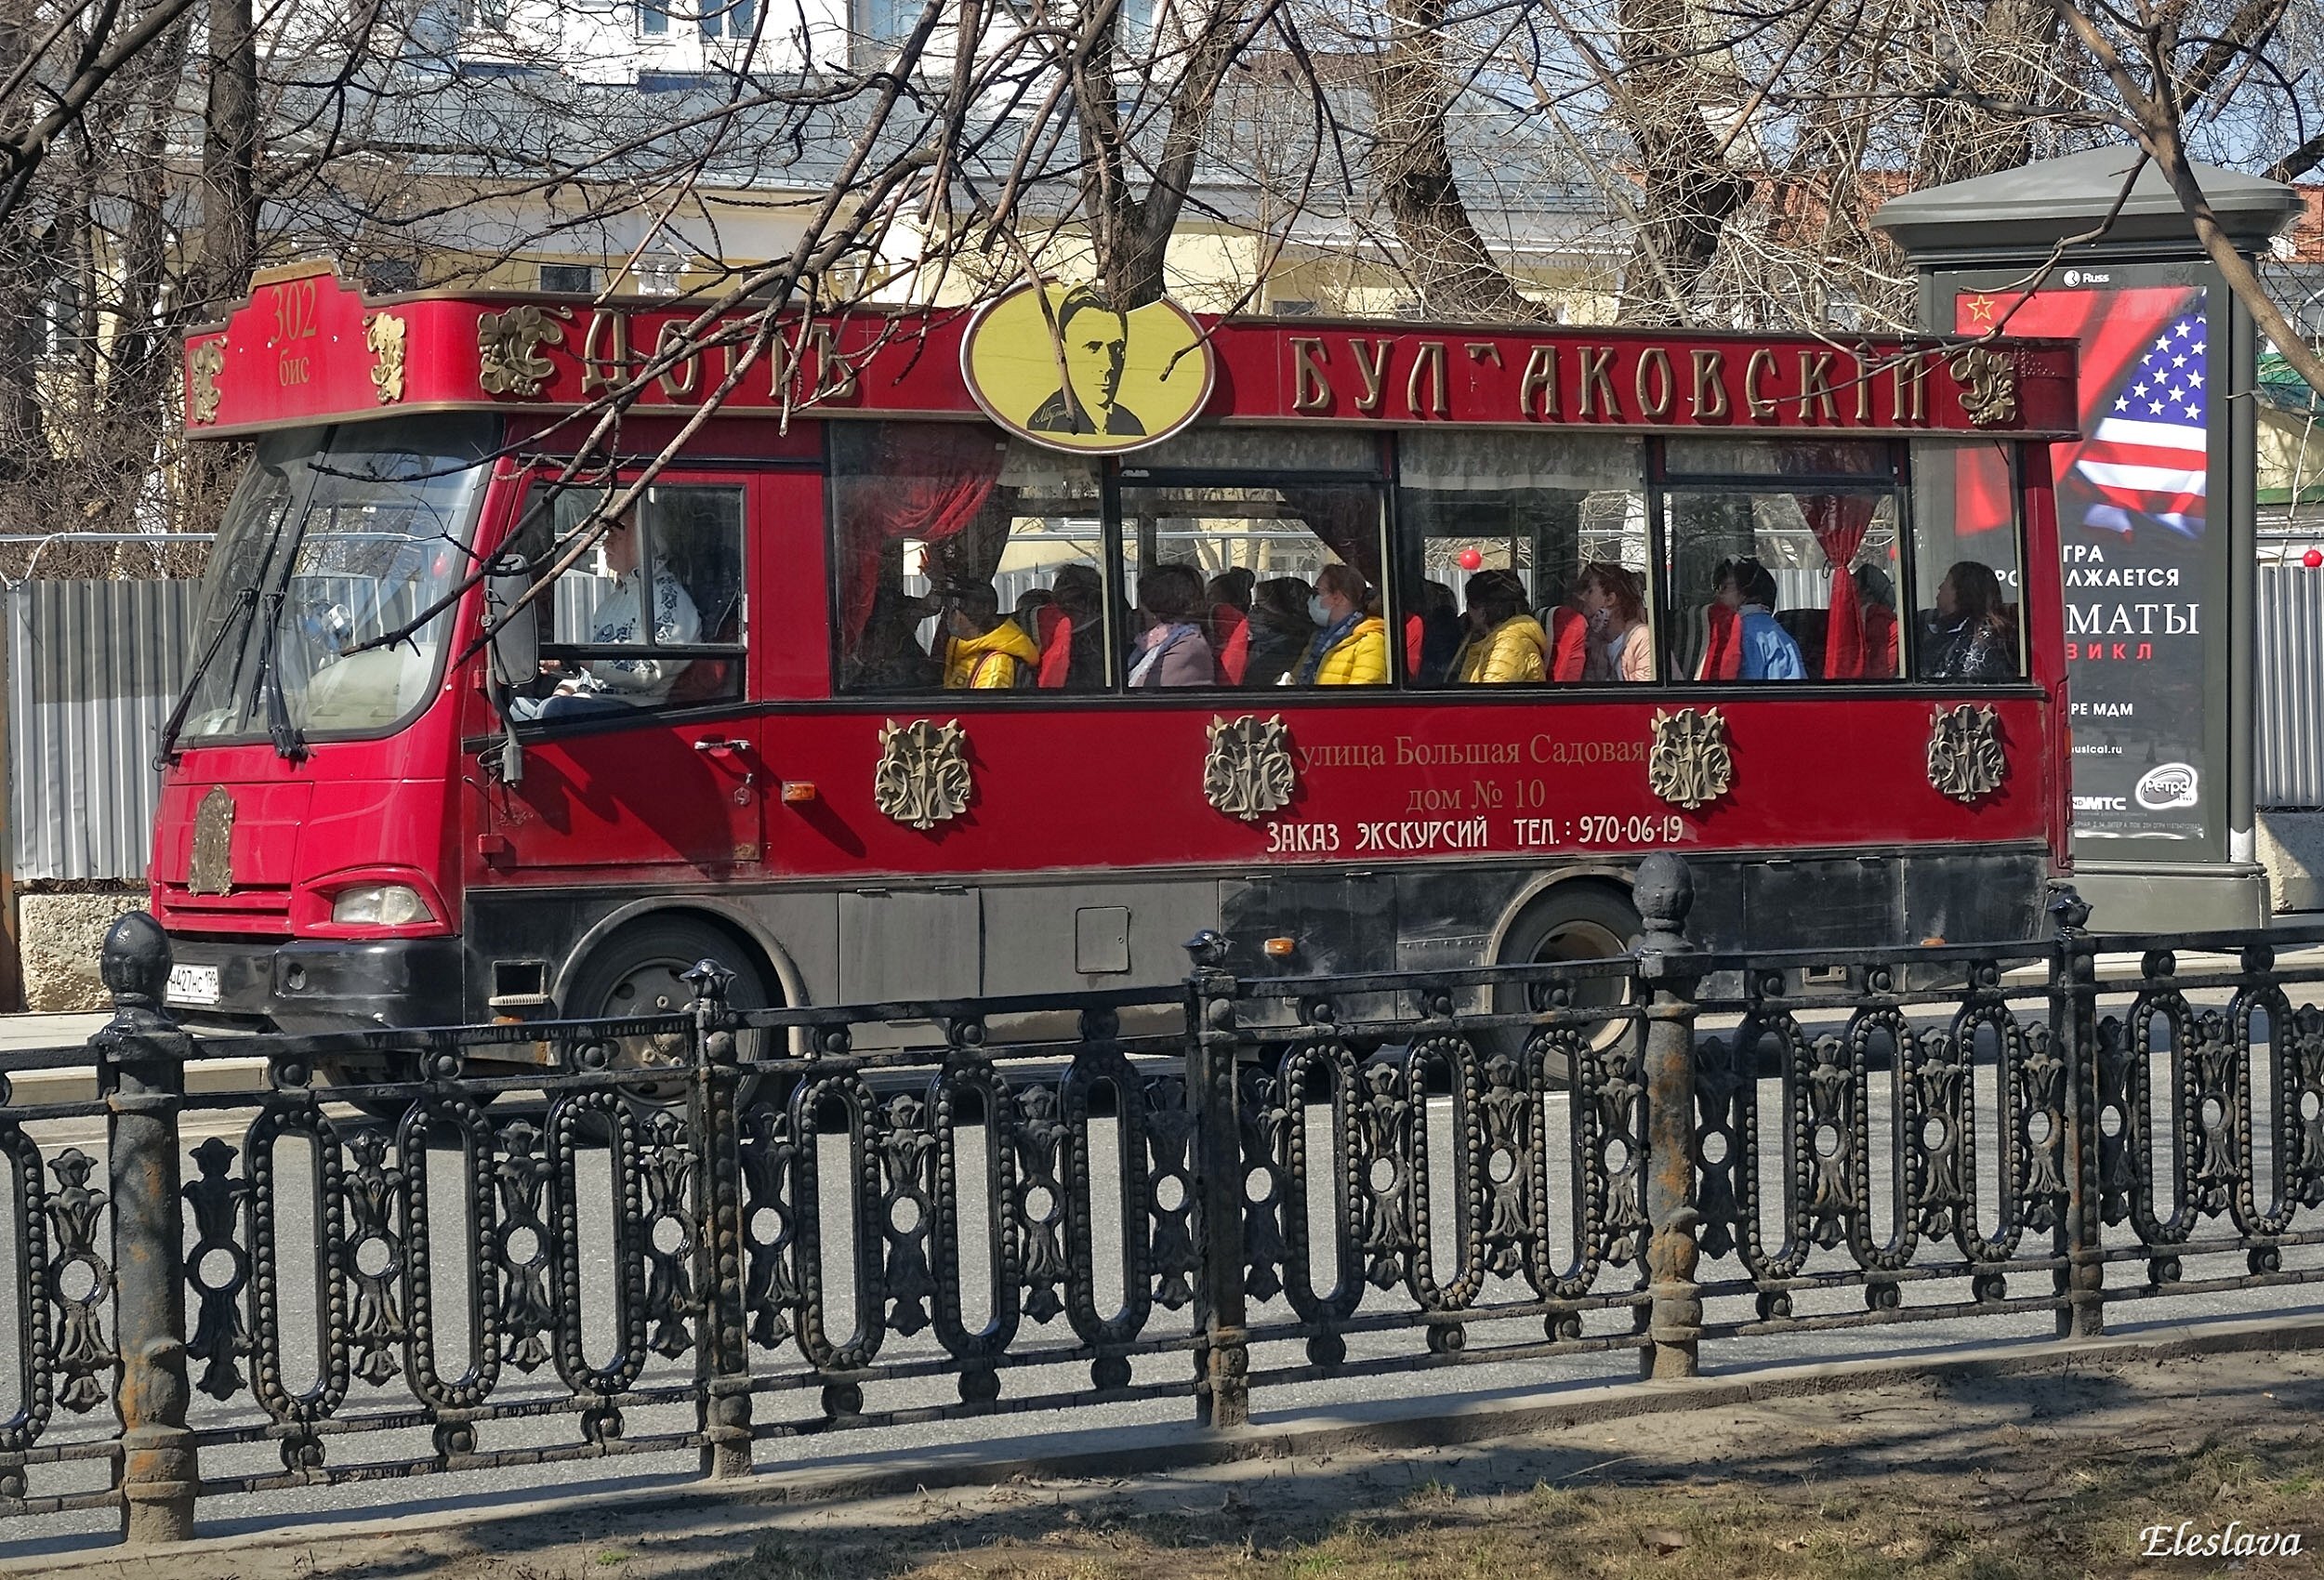 Автобус красное новосибирск